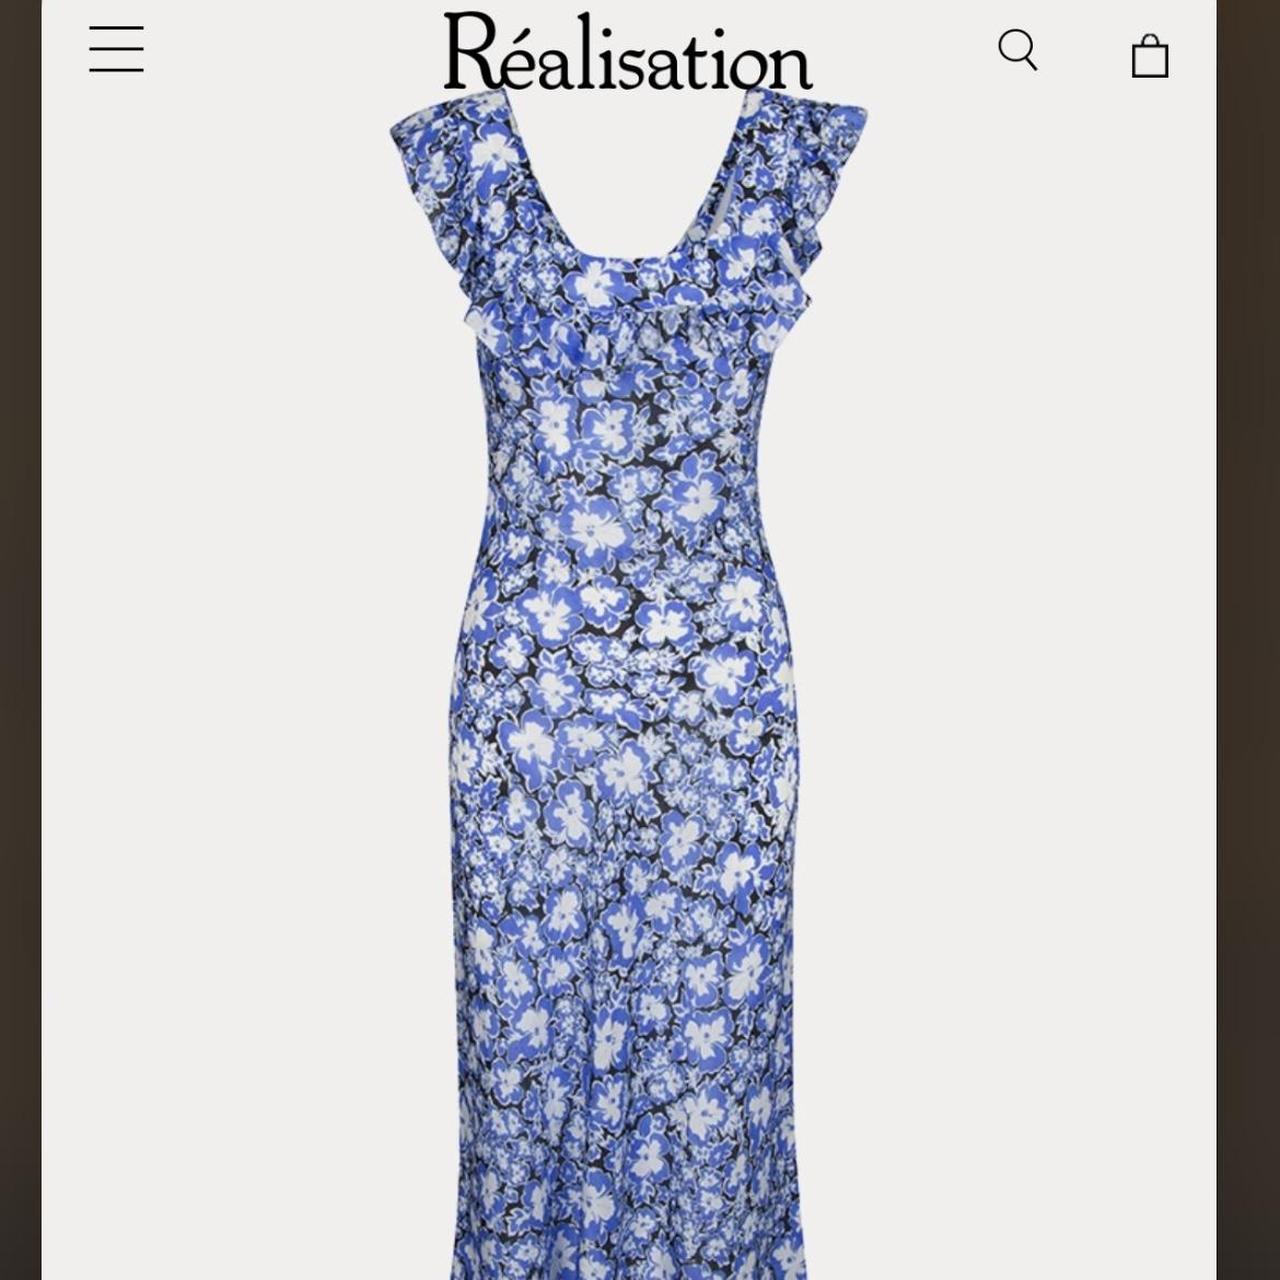 Product Image 1 - Realisation Par The Lou dress